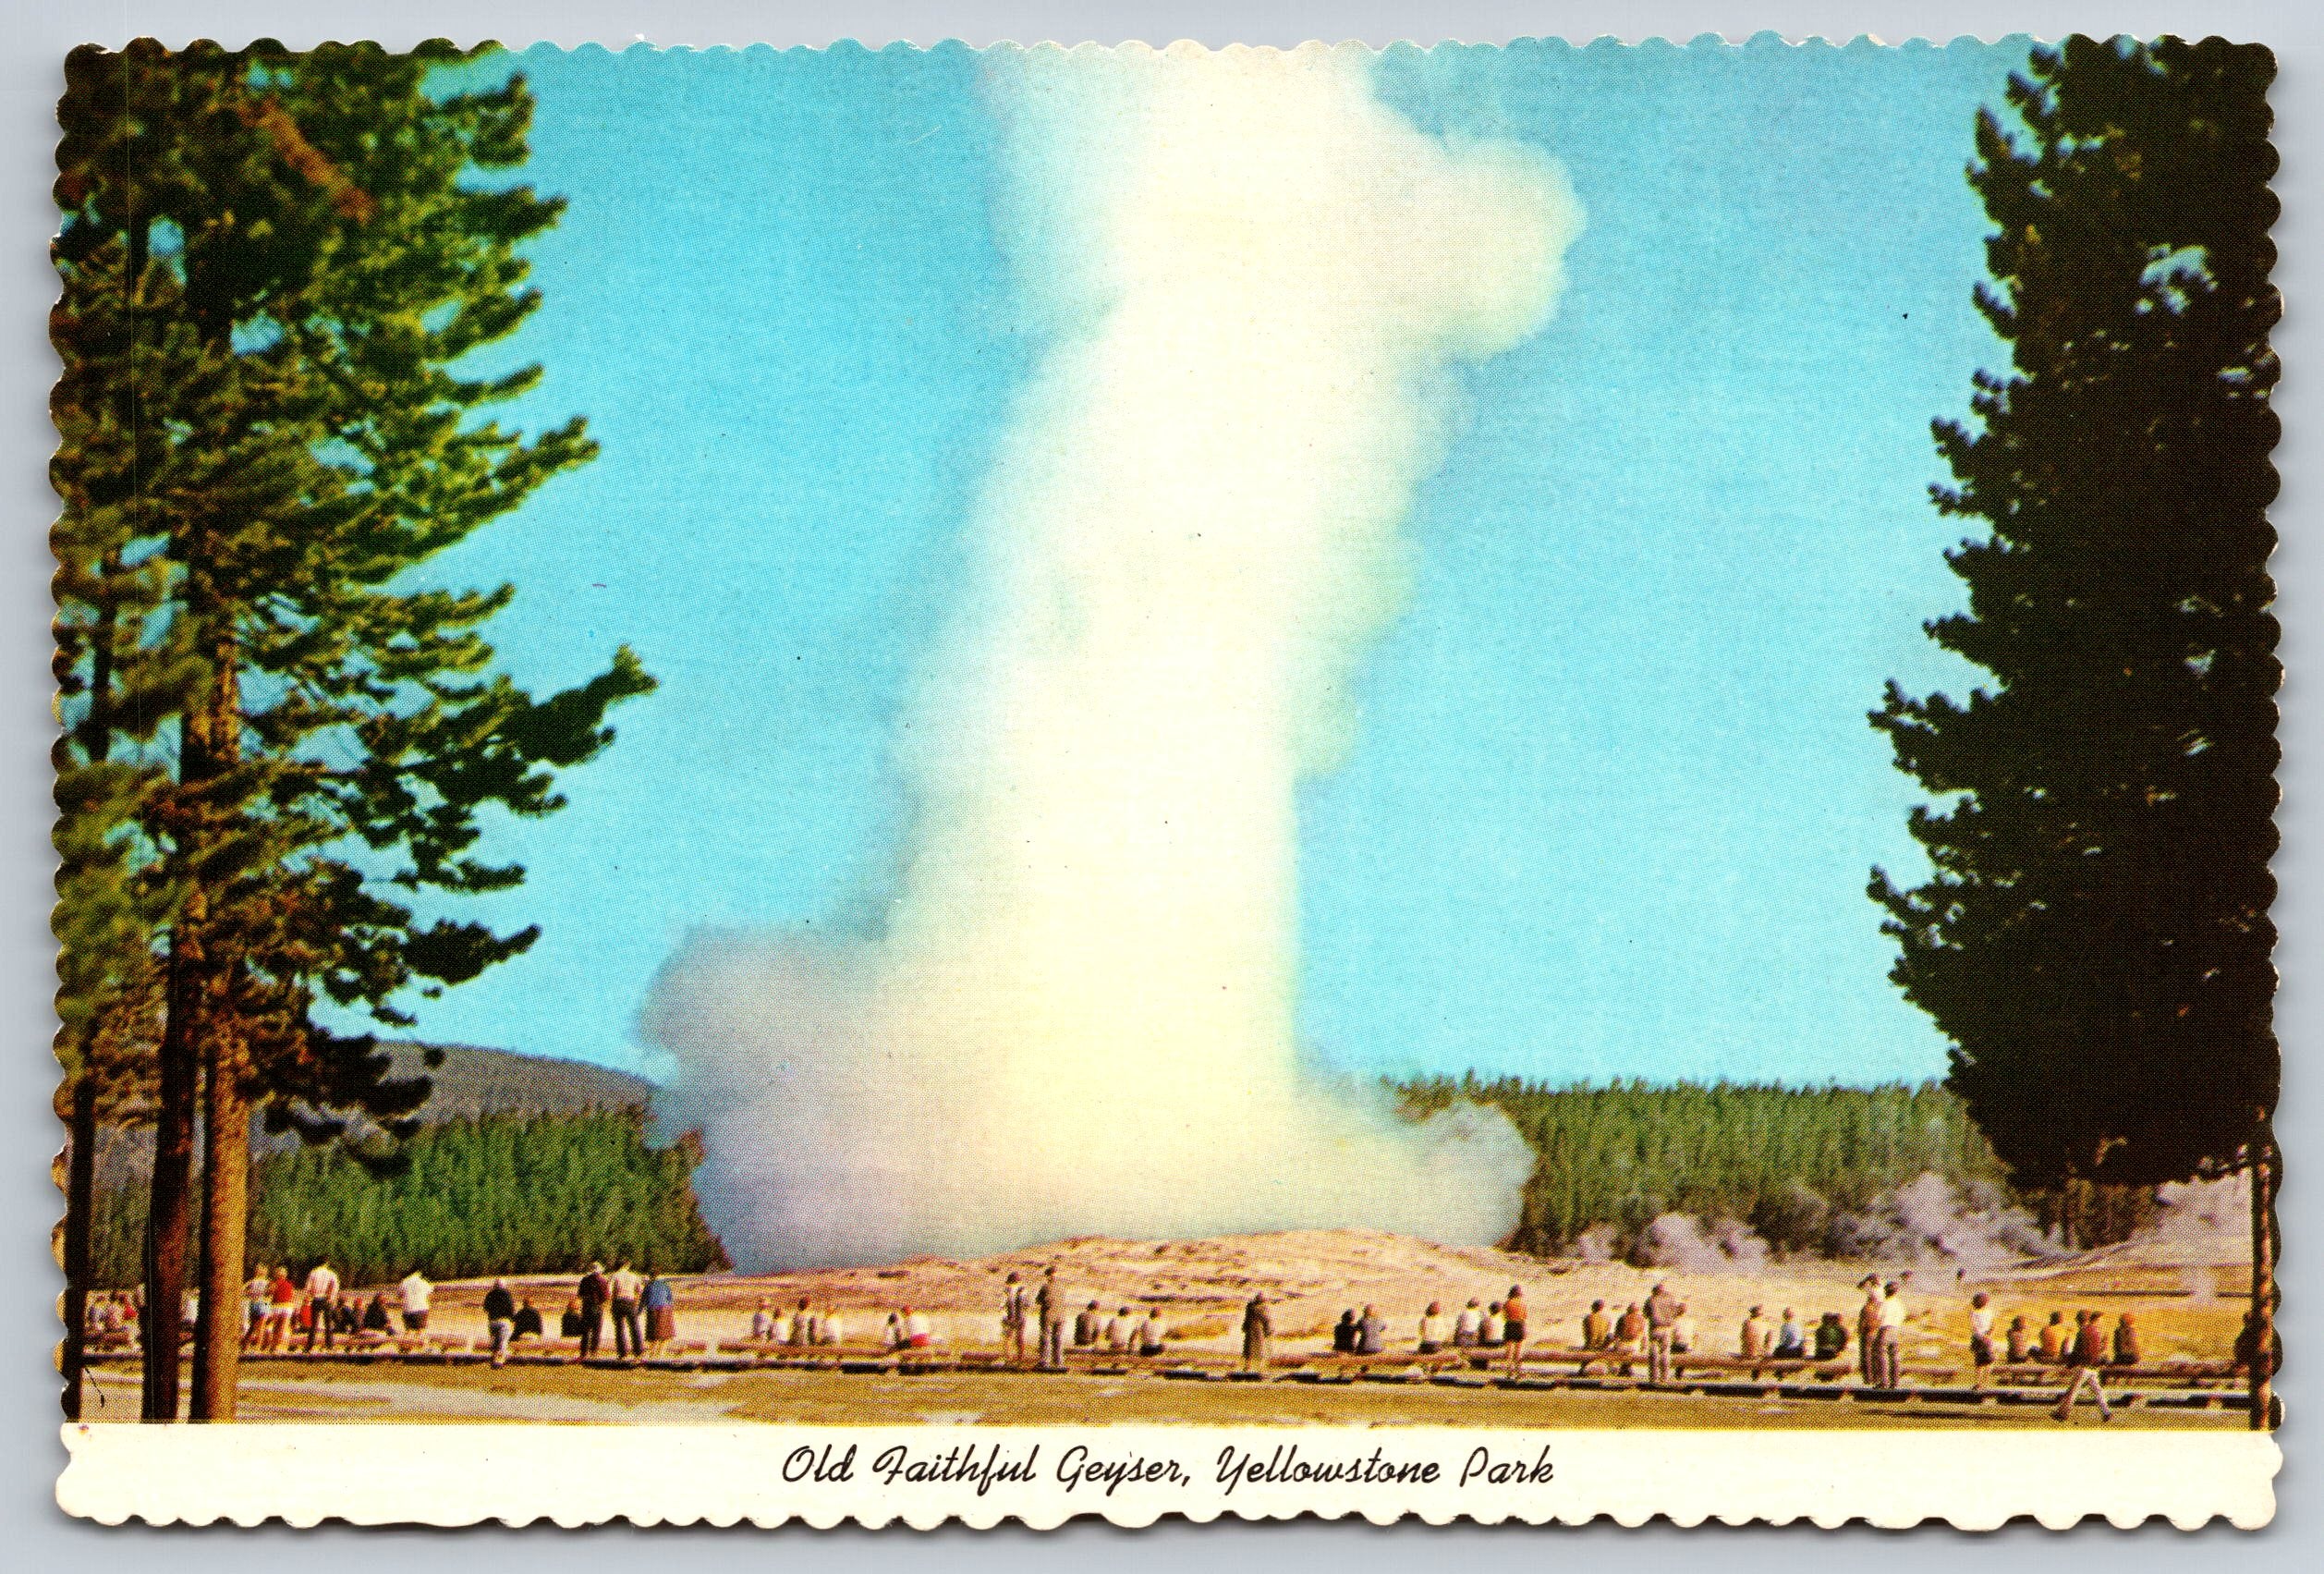 Old Faithful Geyser, Yellowstone Park, Vintage Post Card